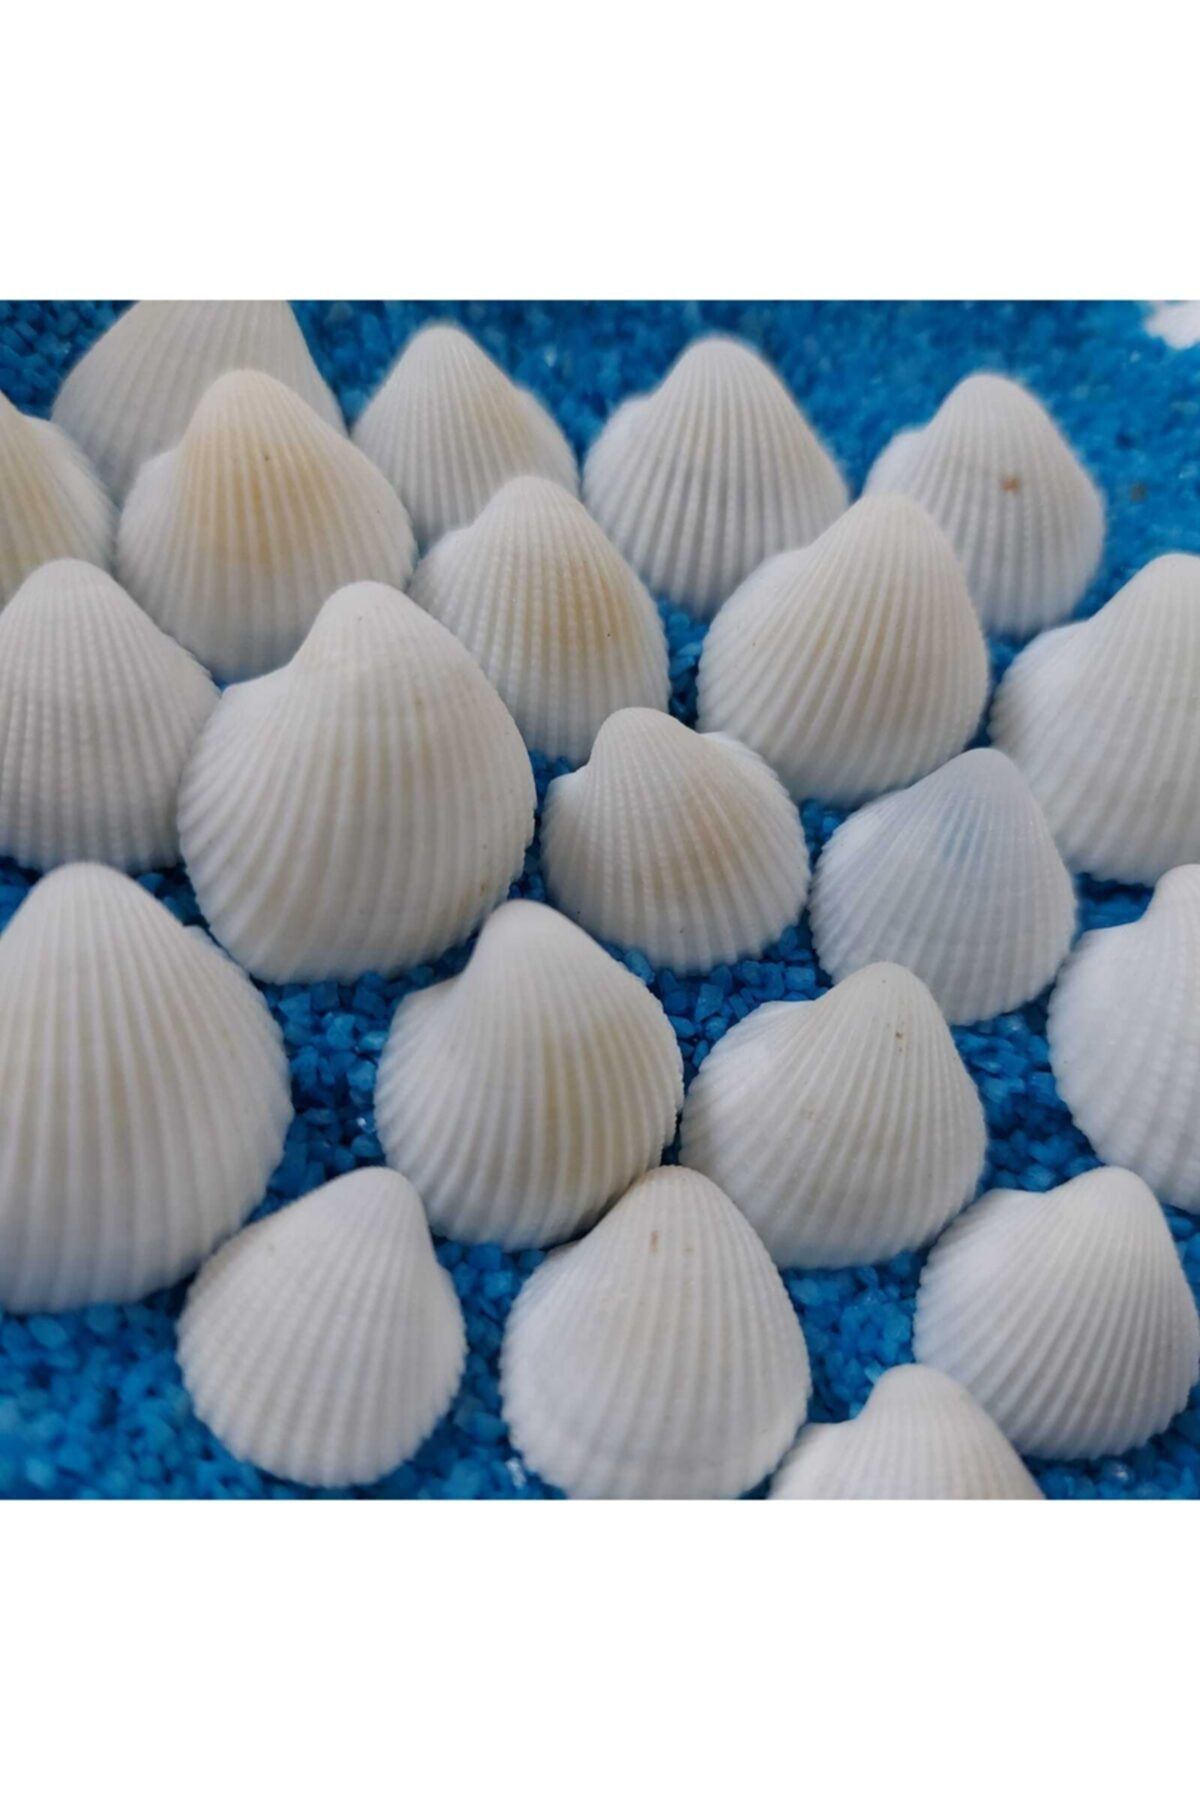 Aker Hediyelik 1,5-2,5cm Küçük Deniz Kabuğu 50gr Teraryum Deniz Kabukları Silis Akvaryum Süs Ufak Kabuk Modelleri